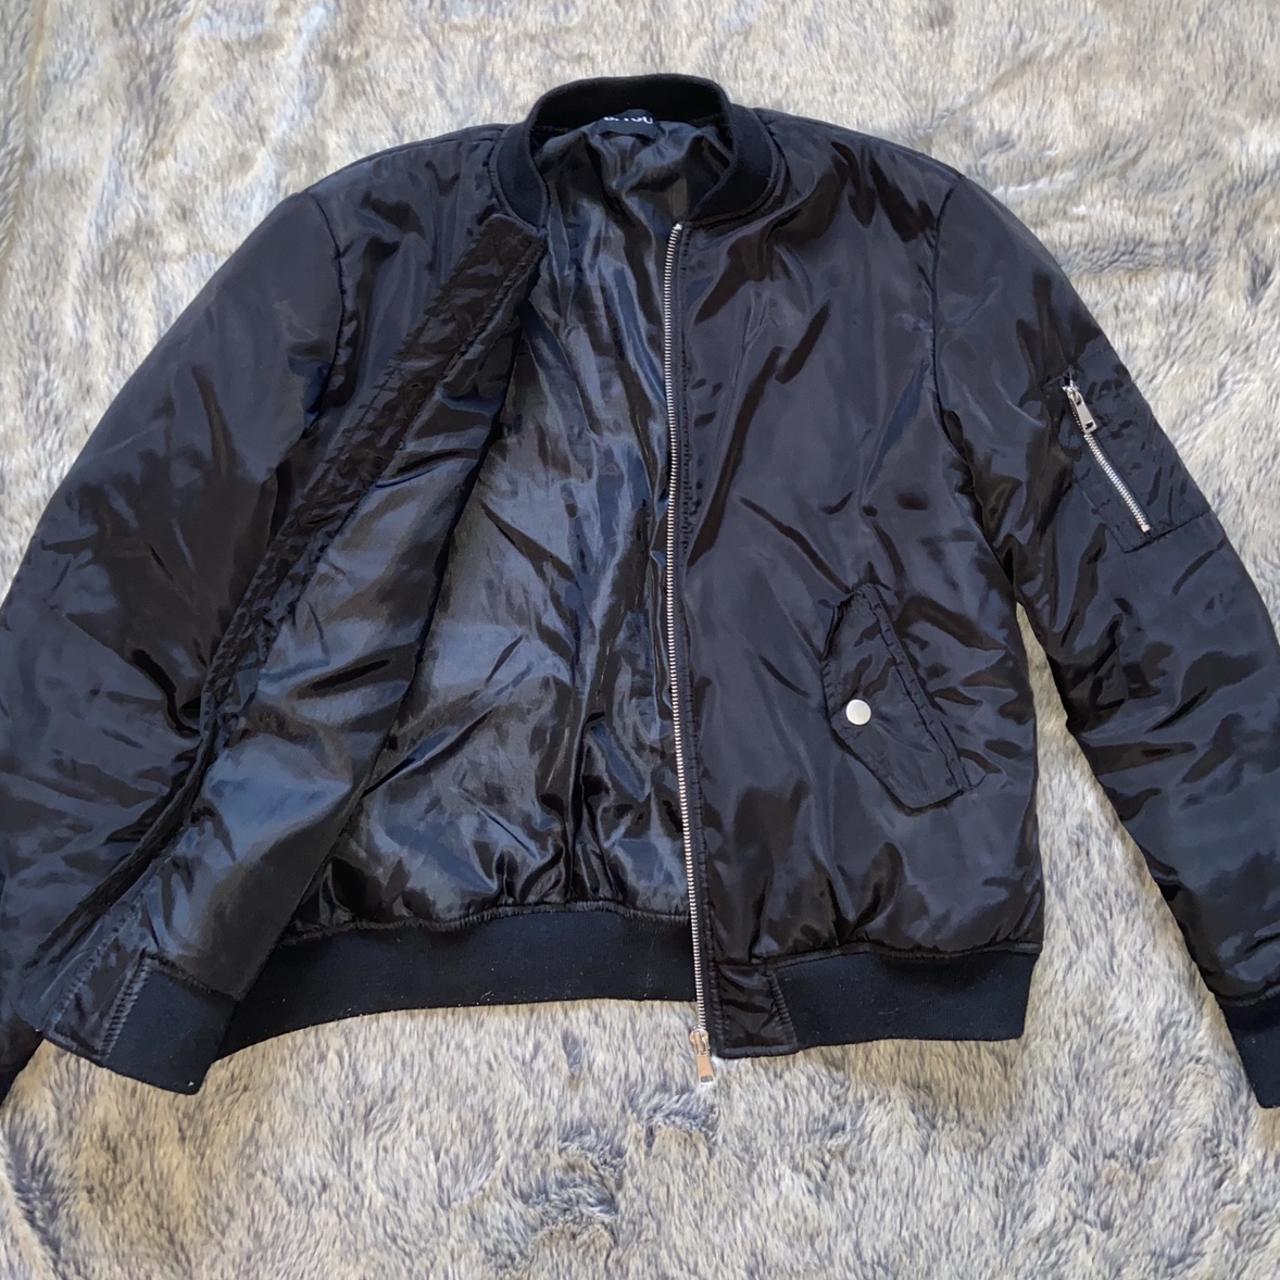 Black bomber jacket 💗💗 #bomber #black #jacket... - Depop